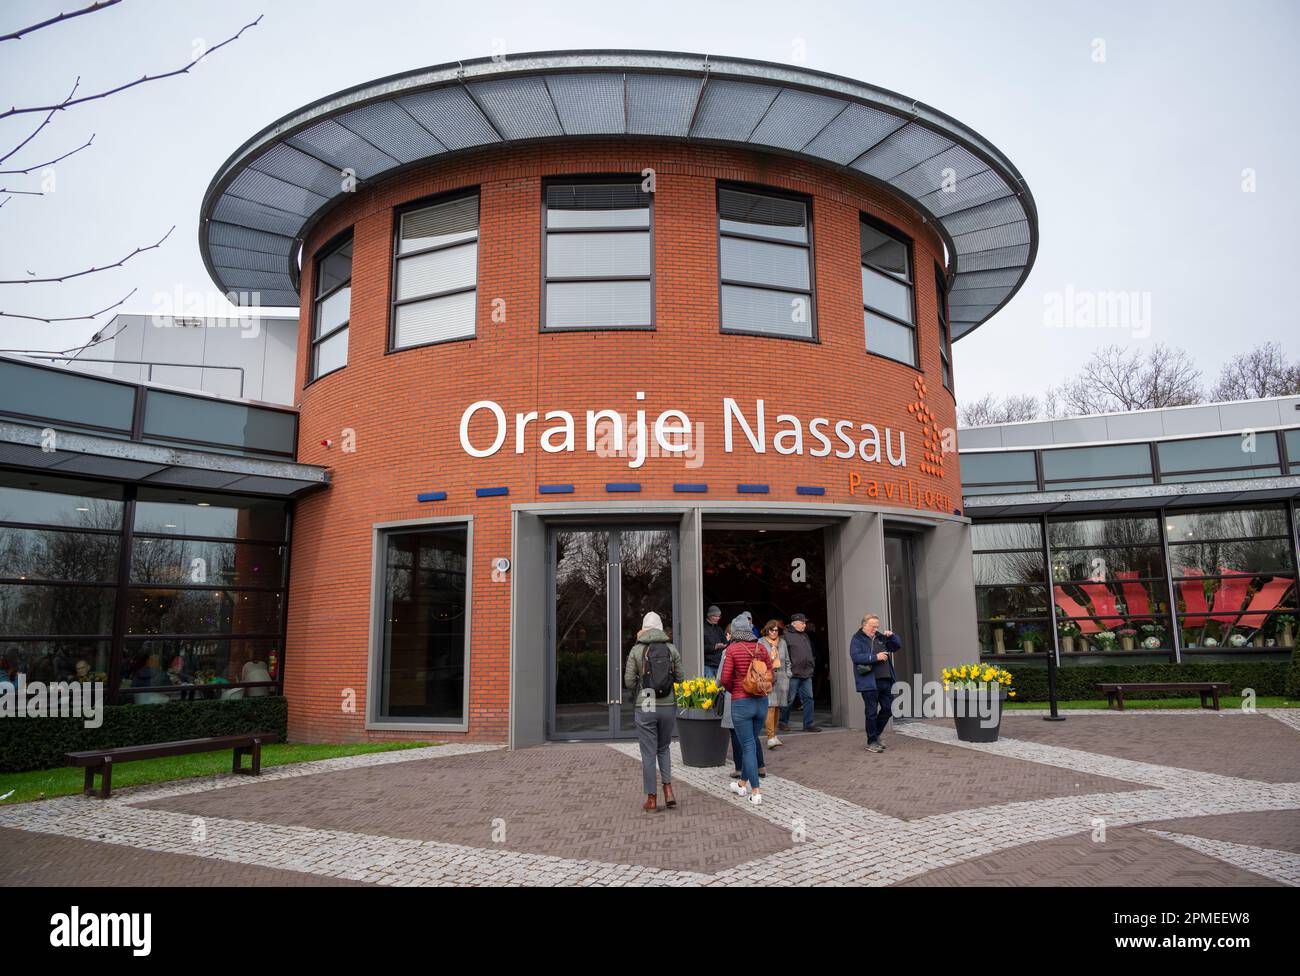 Vue du pavillon Oranje Nassau un des trois « bâtiments fleuris » situés dans le parc Keukenhof, Amsterdam, pays-Bas. Banque D'Images